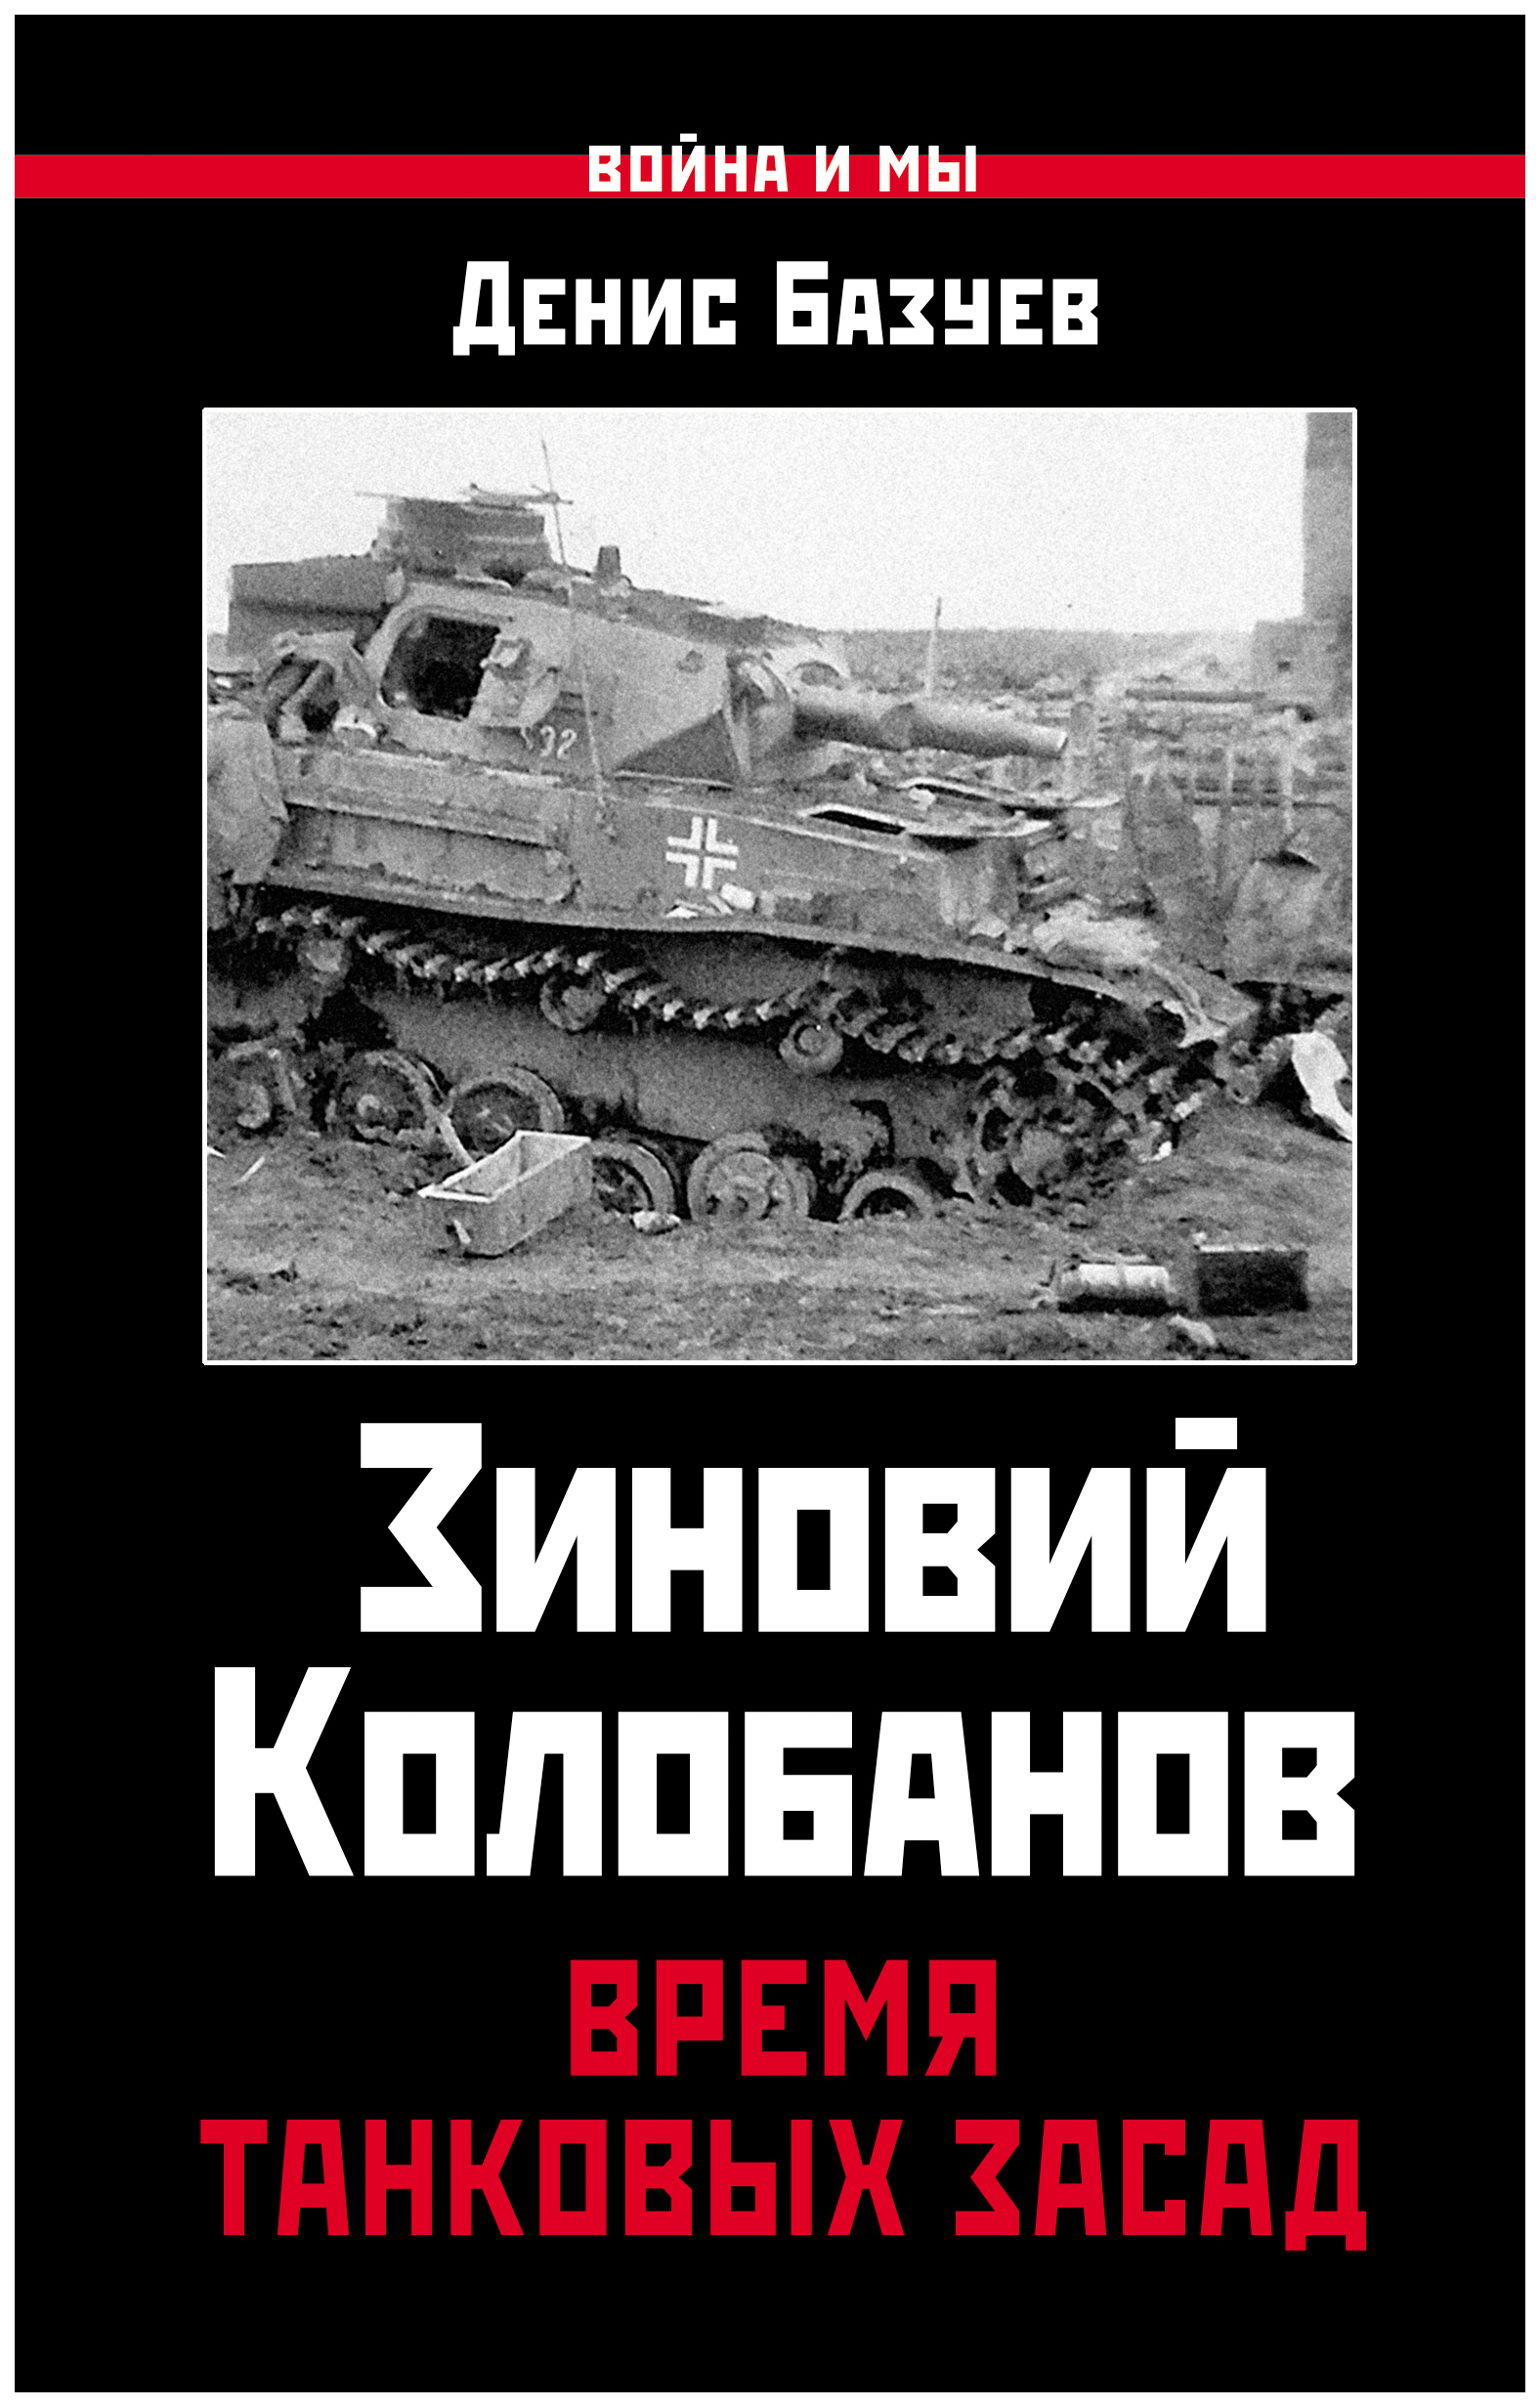 фото Книга зиновий колобанов, время танковых засад яуза